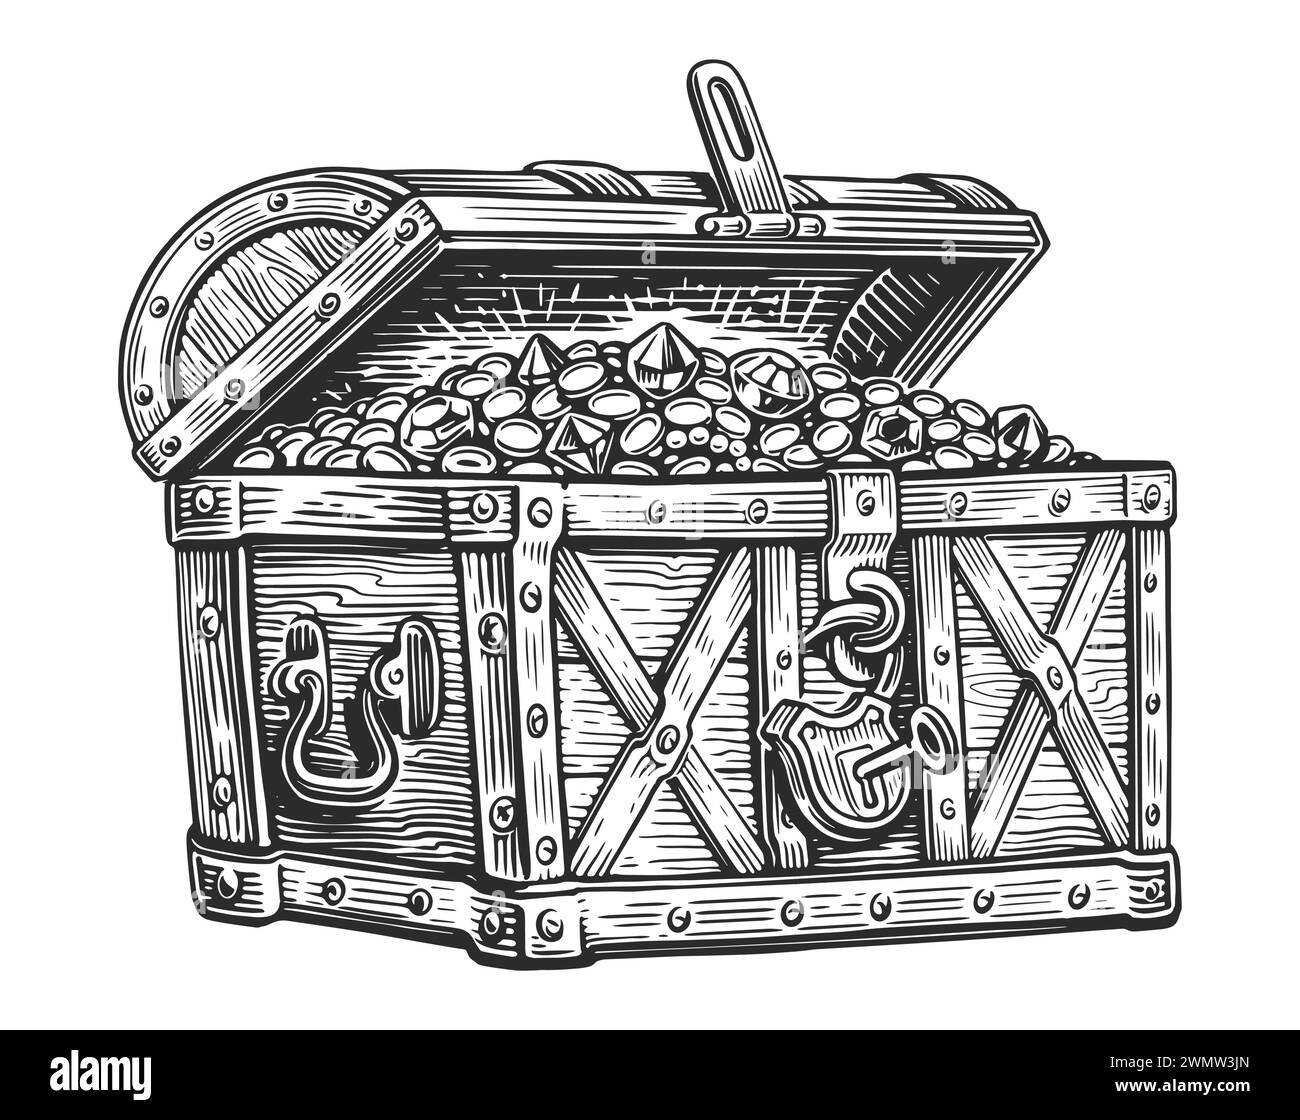 Cassa pirata piena di tesori di monete d'oro e pietre preziose. Illustrazione vettoriale disegnata a mano in stile incisione Illustrazione Vettoriale